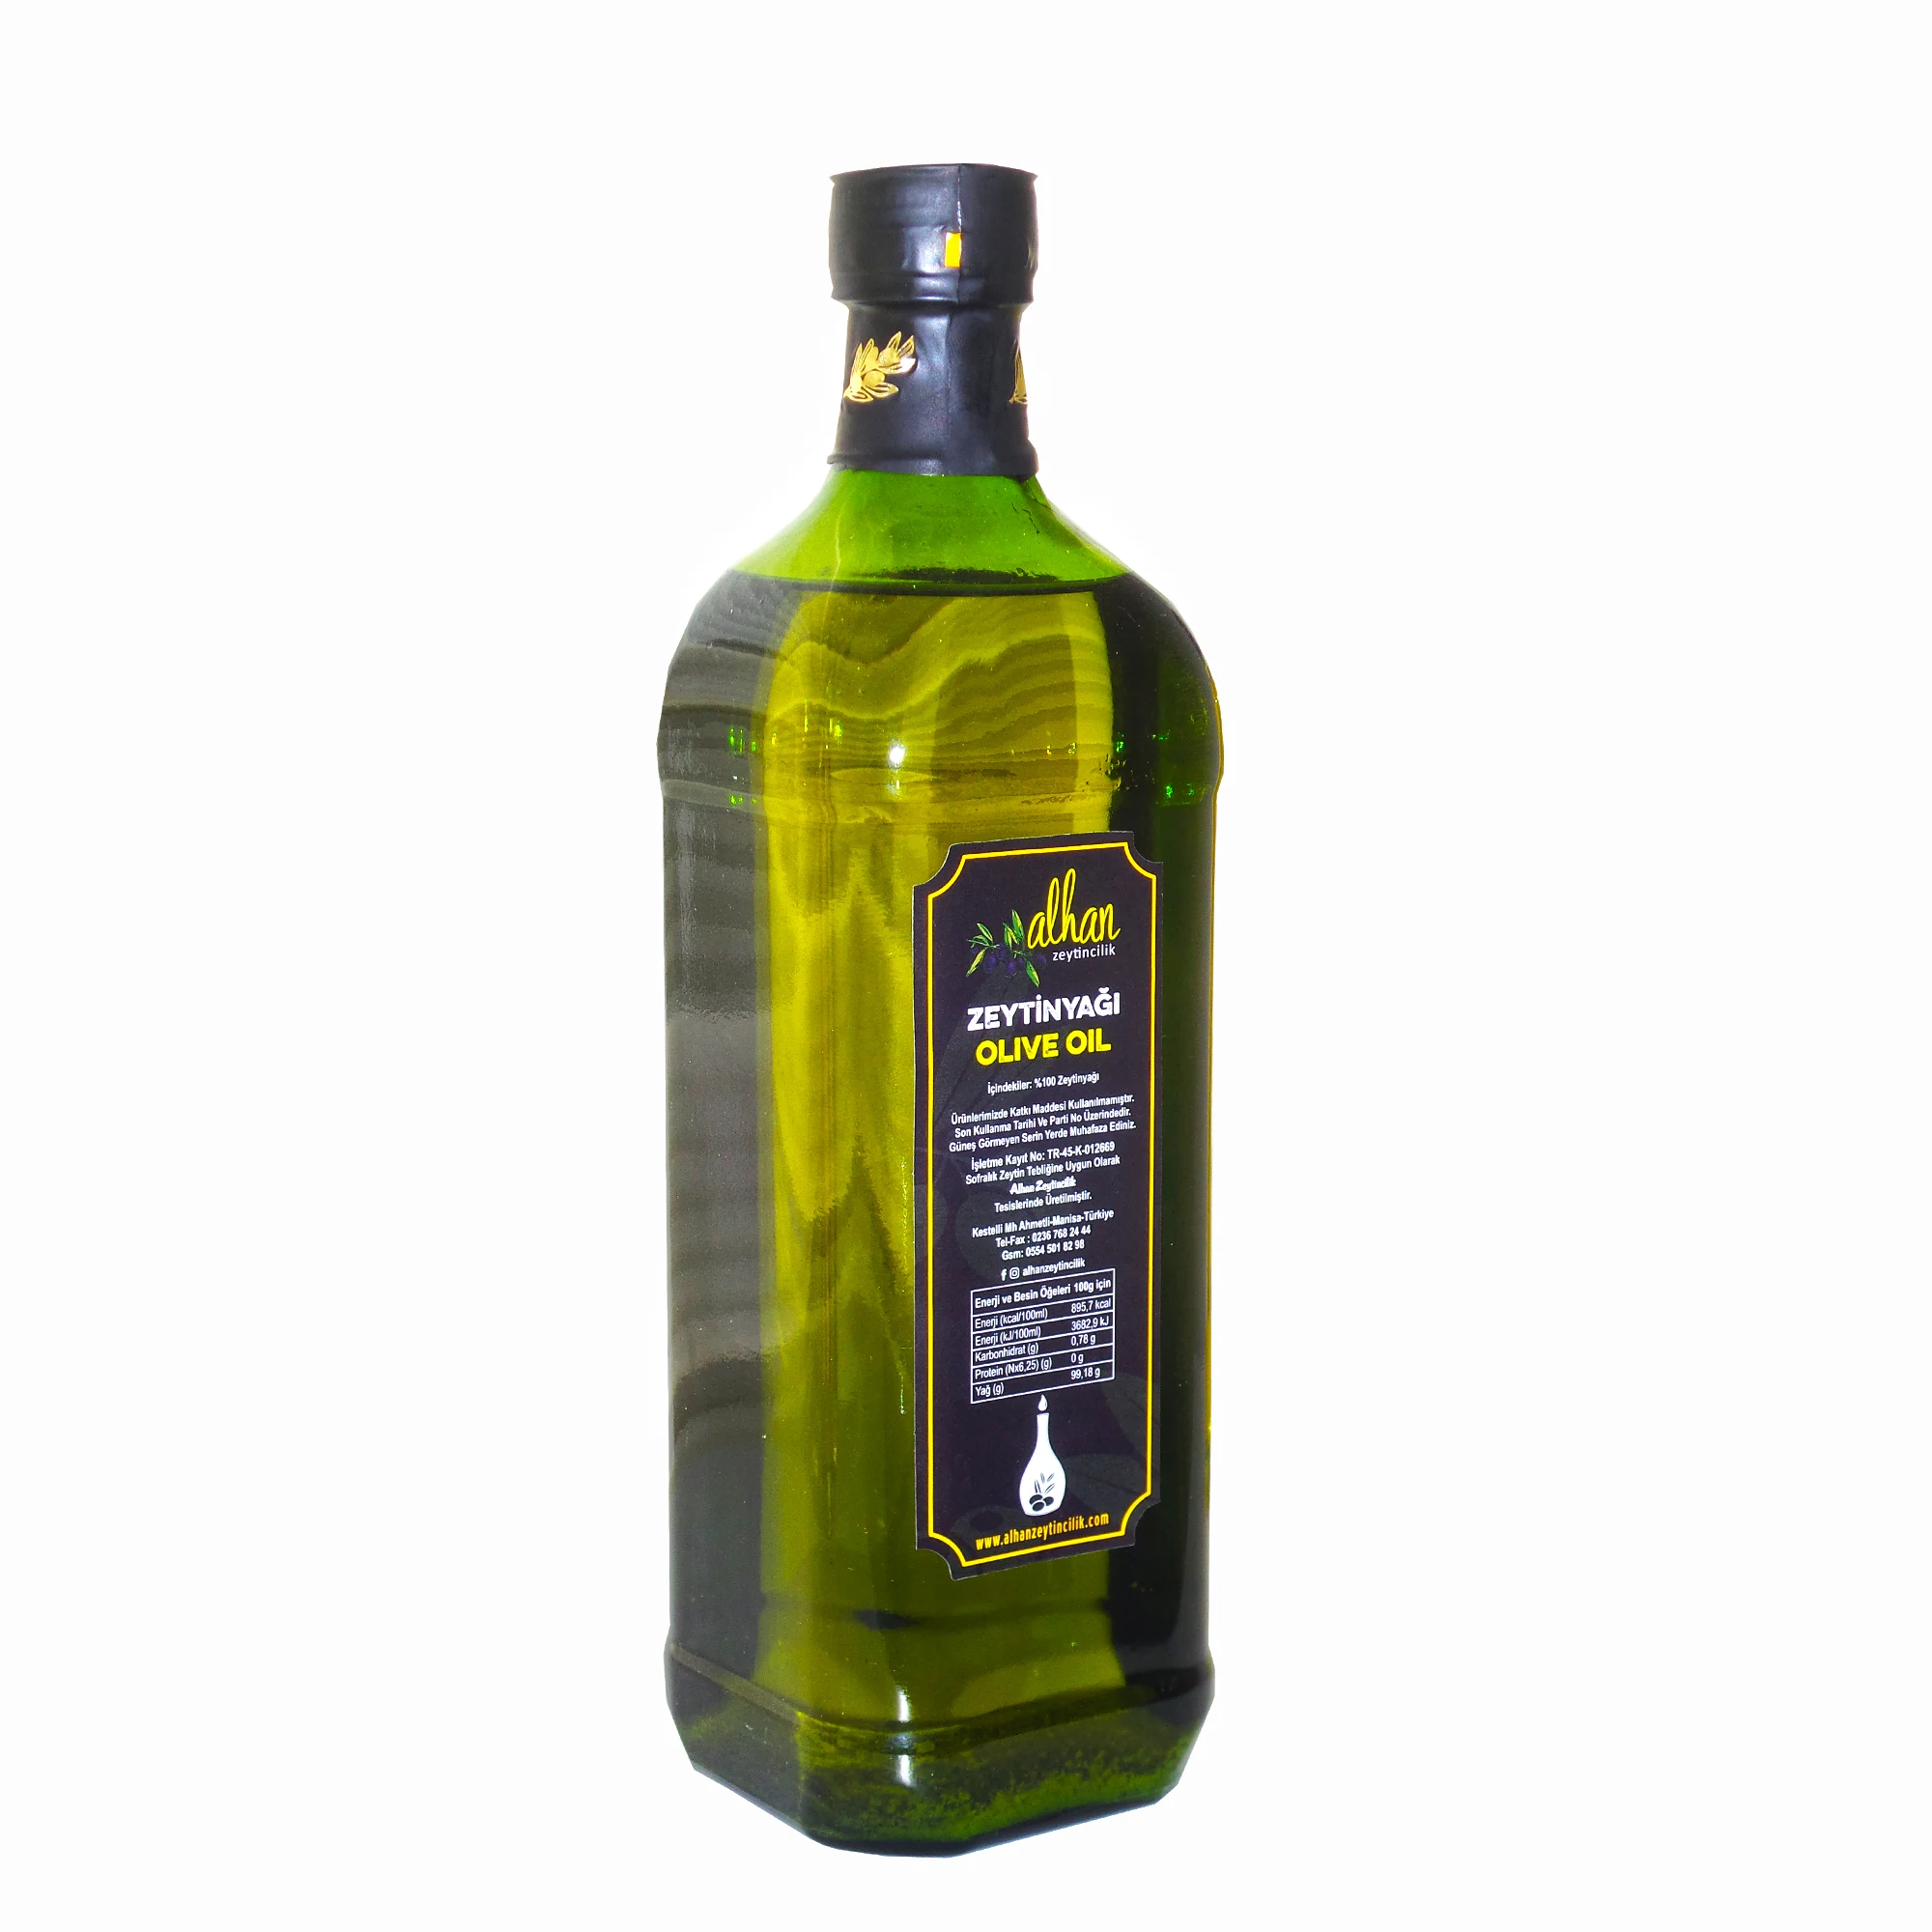 

Магическое холоднопрессованное Экстра натуральное оливковое масло шеф-повара-1 л